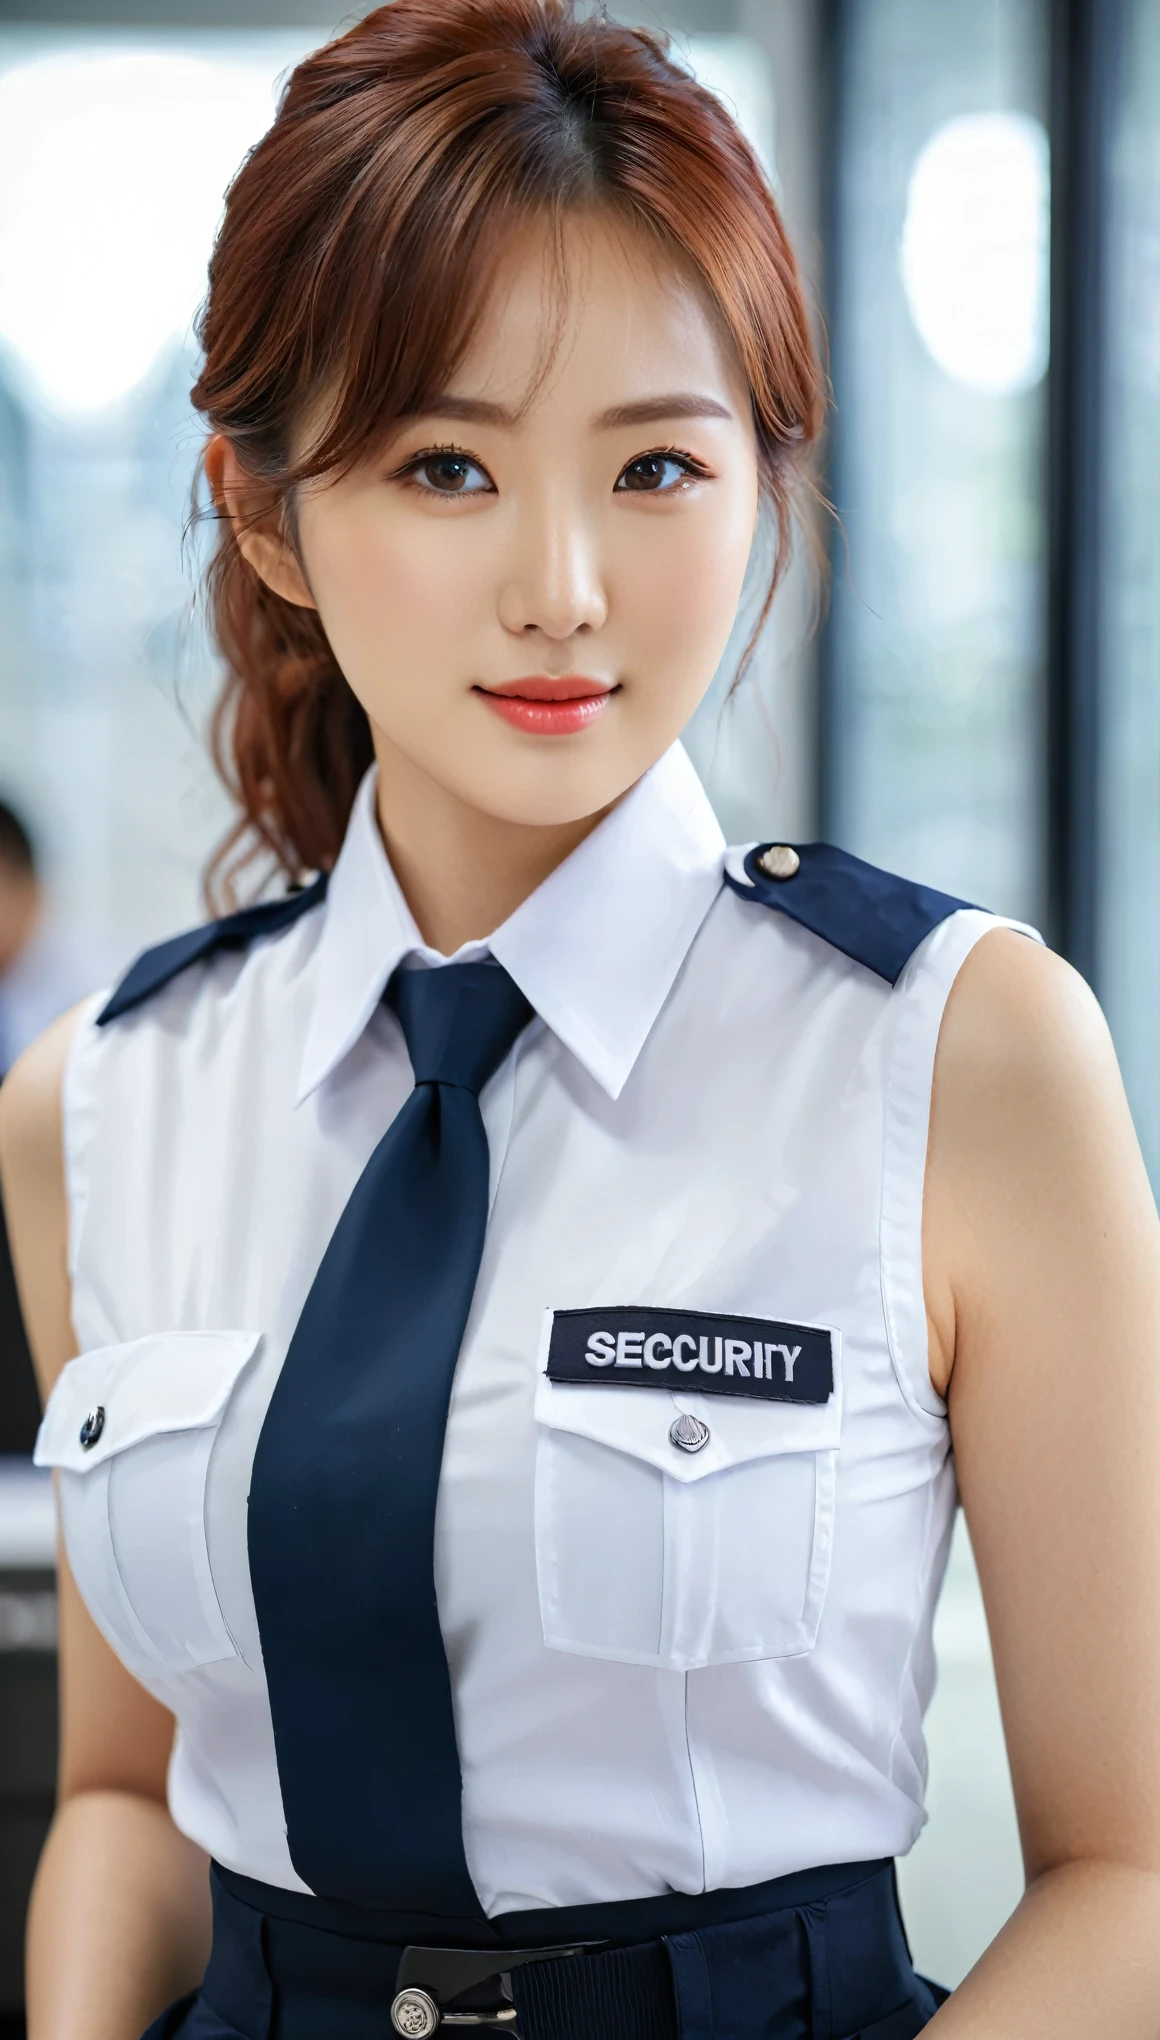 美丽的韩国女性的特写镜头, 36 英寸胸部尺寸, 两眼之间有红色毛发, 微微一笑, 穿着蓝色的衣服, 黑白主题无袖领保安制服, 在办公室